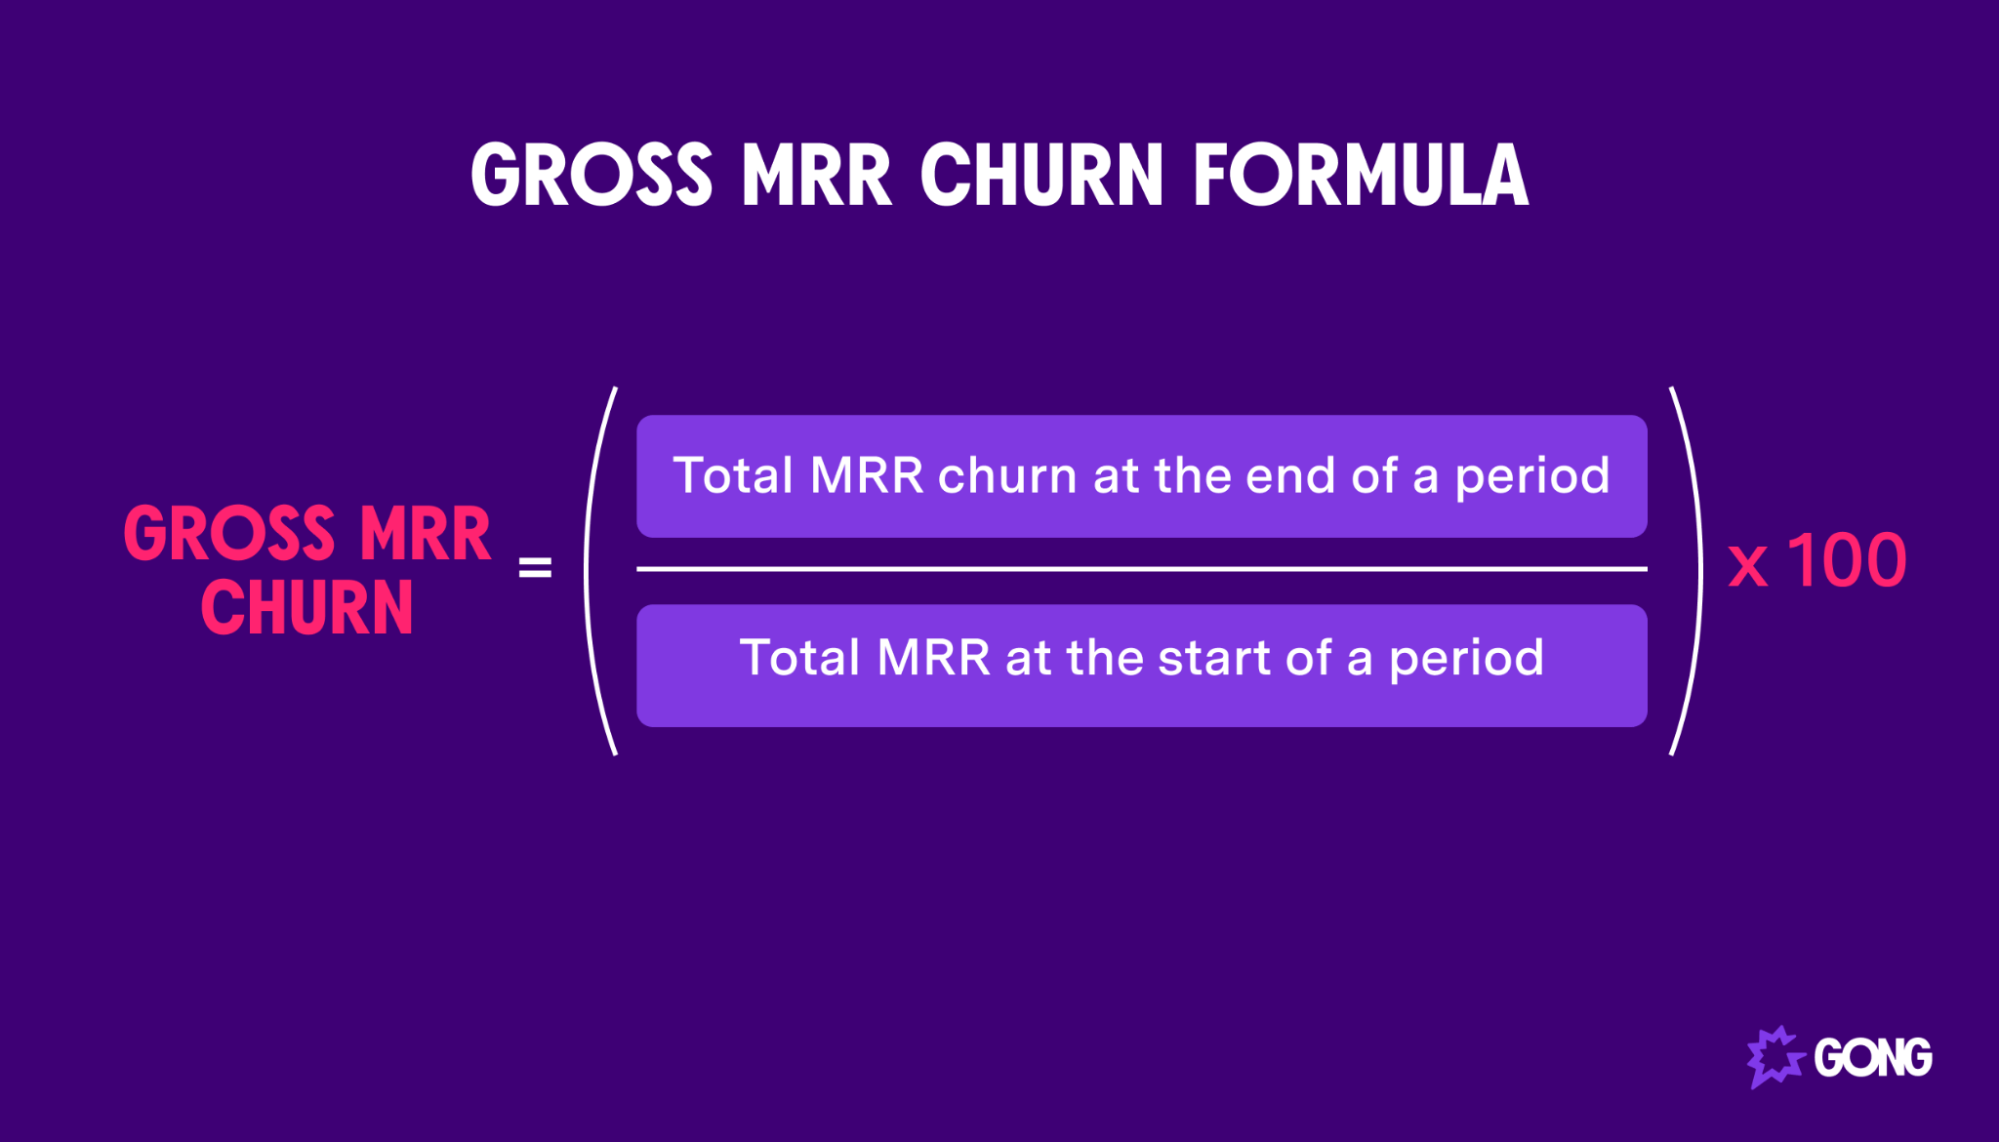 Gross MRR churn formula